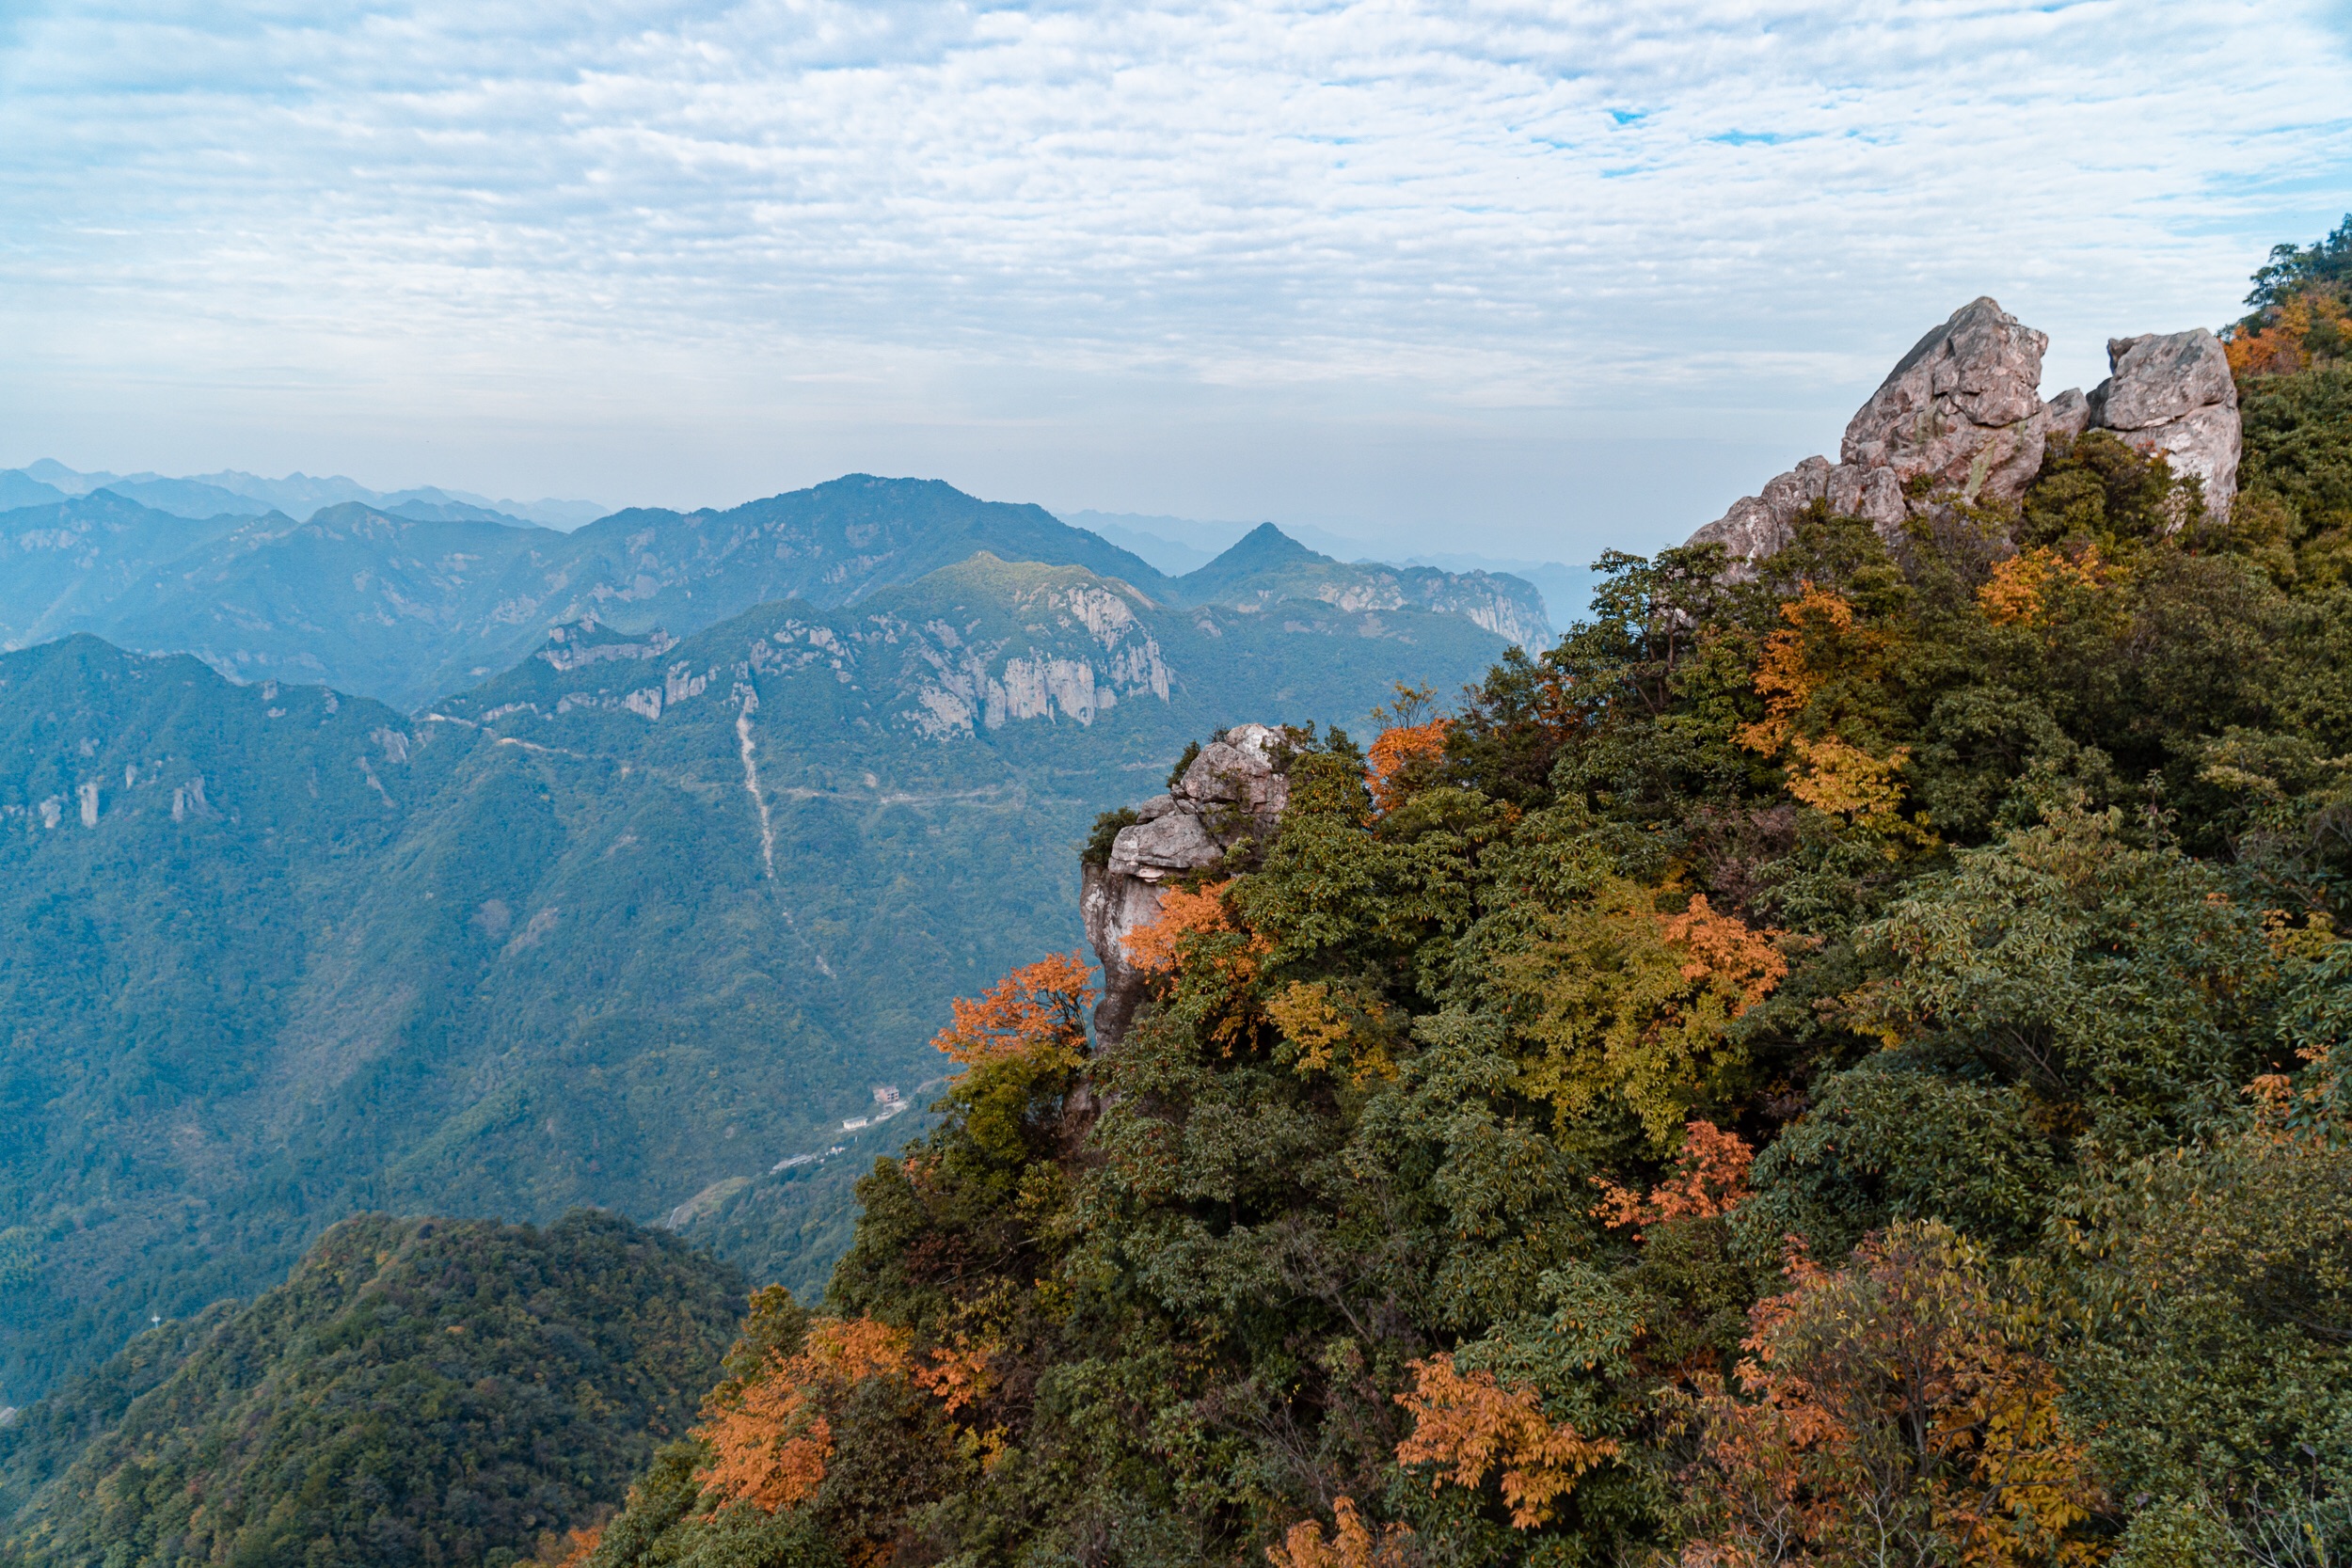 浙江最惊险的森林古道——马岭古道之一峰九崖